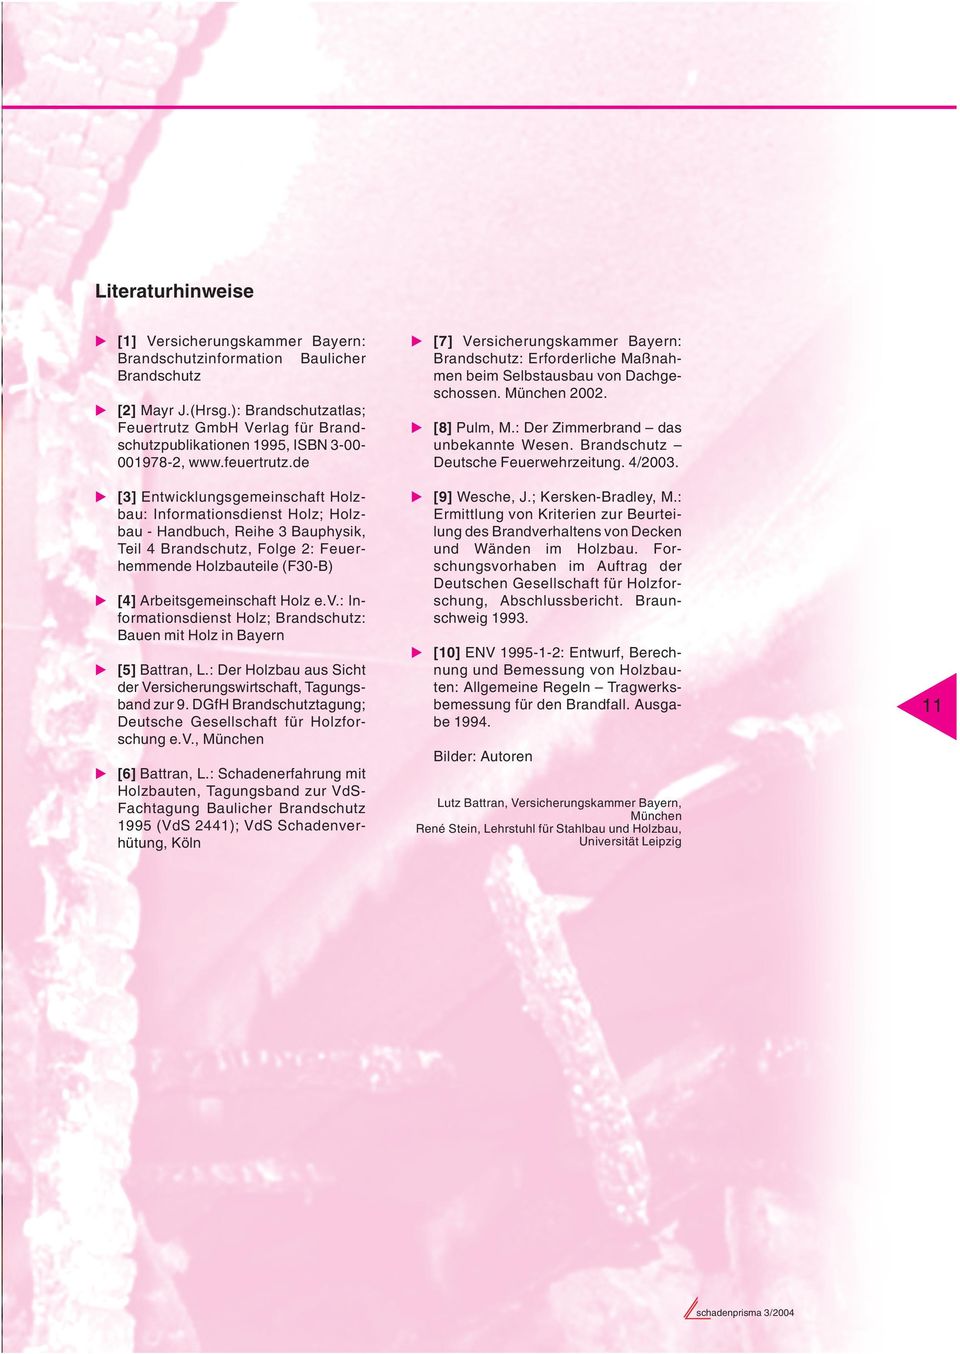 de [3] Entwicklungsgemeinschaft Holzbau: Informationsdienst Holz; Holzbau - Handbuch, Reihe 3 Bauphysik, Teil 4 Brandschutz, Folge 2: Feuerhemmende Holzbauteile (F30-B) [4] Arbeitsgemeinschaft Holz e.